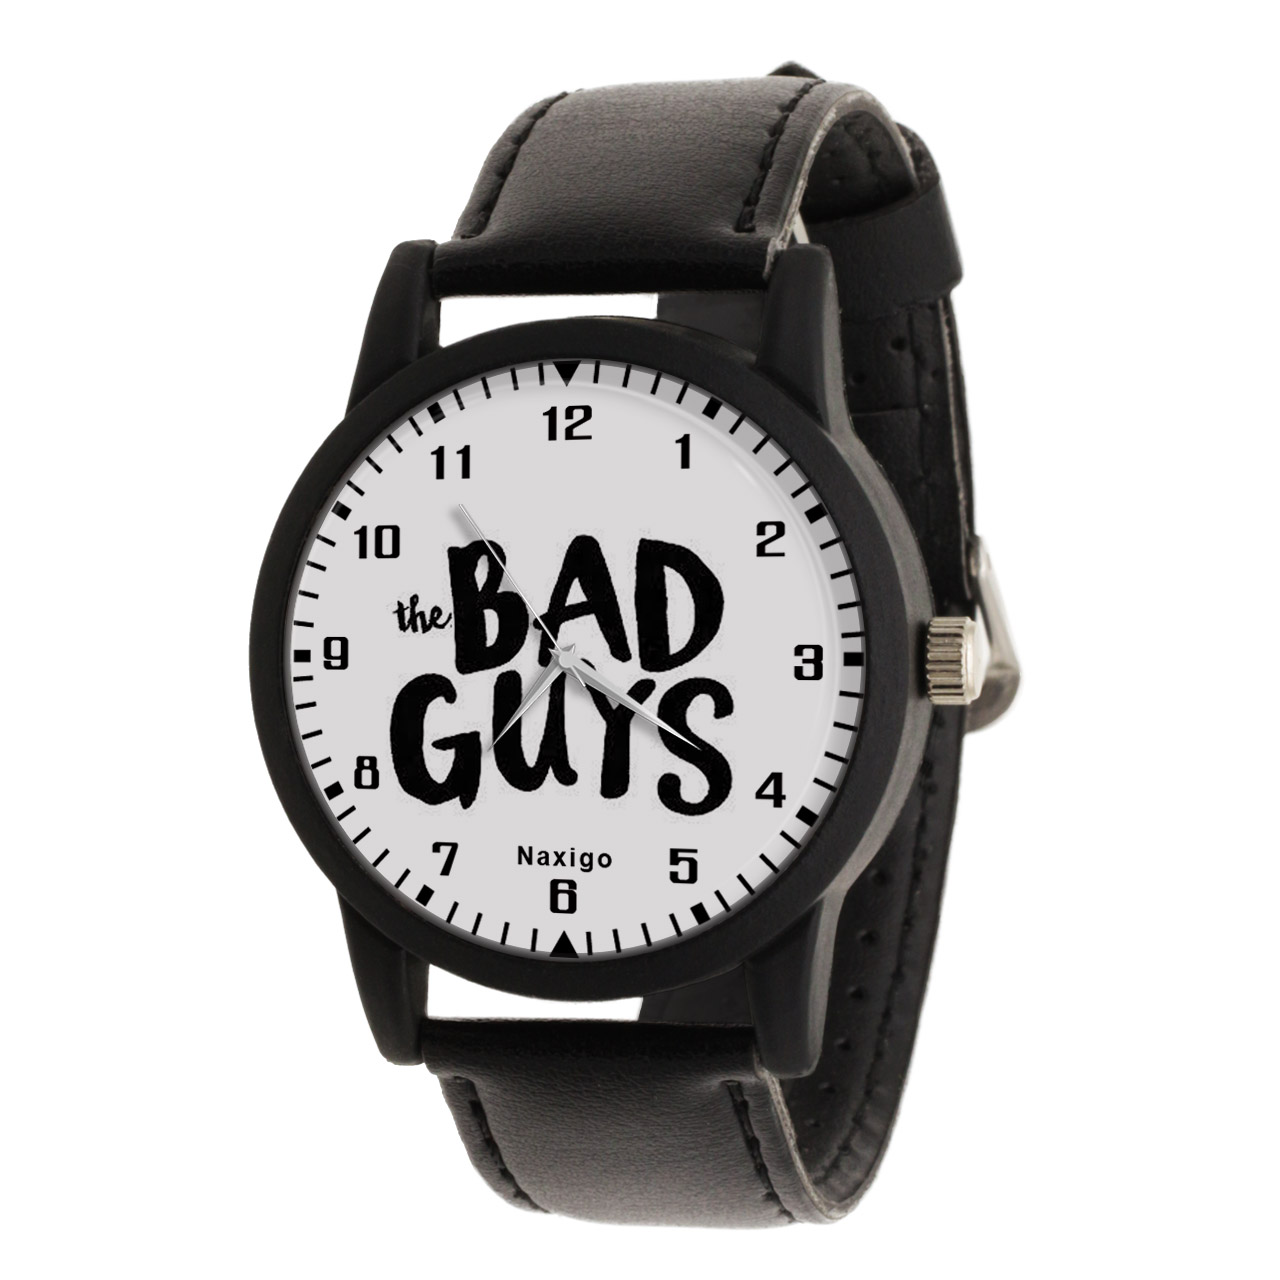 ساعت مچی عقربه ای ناکسیگو مدل The Bad Guys کد LF14073